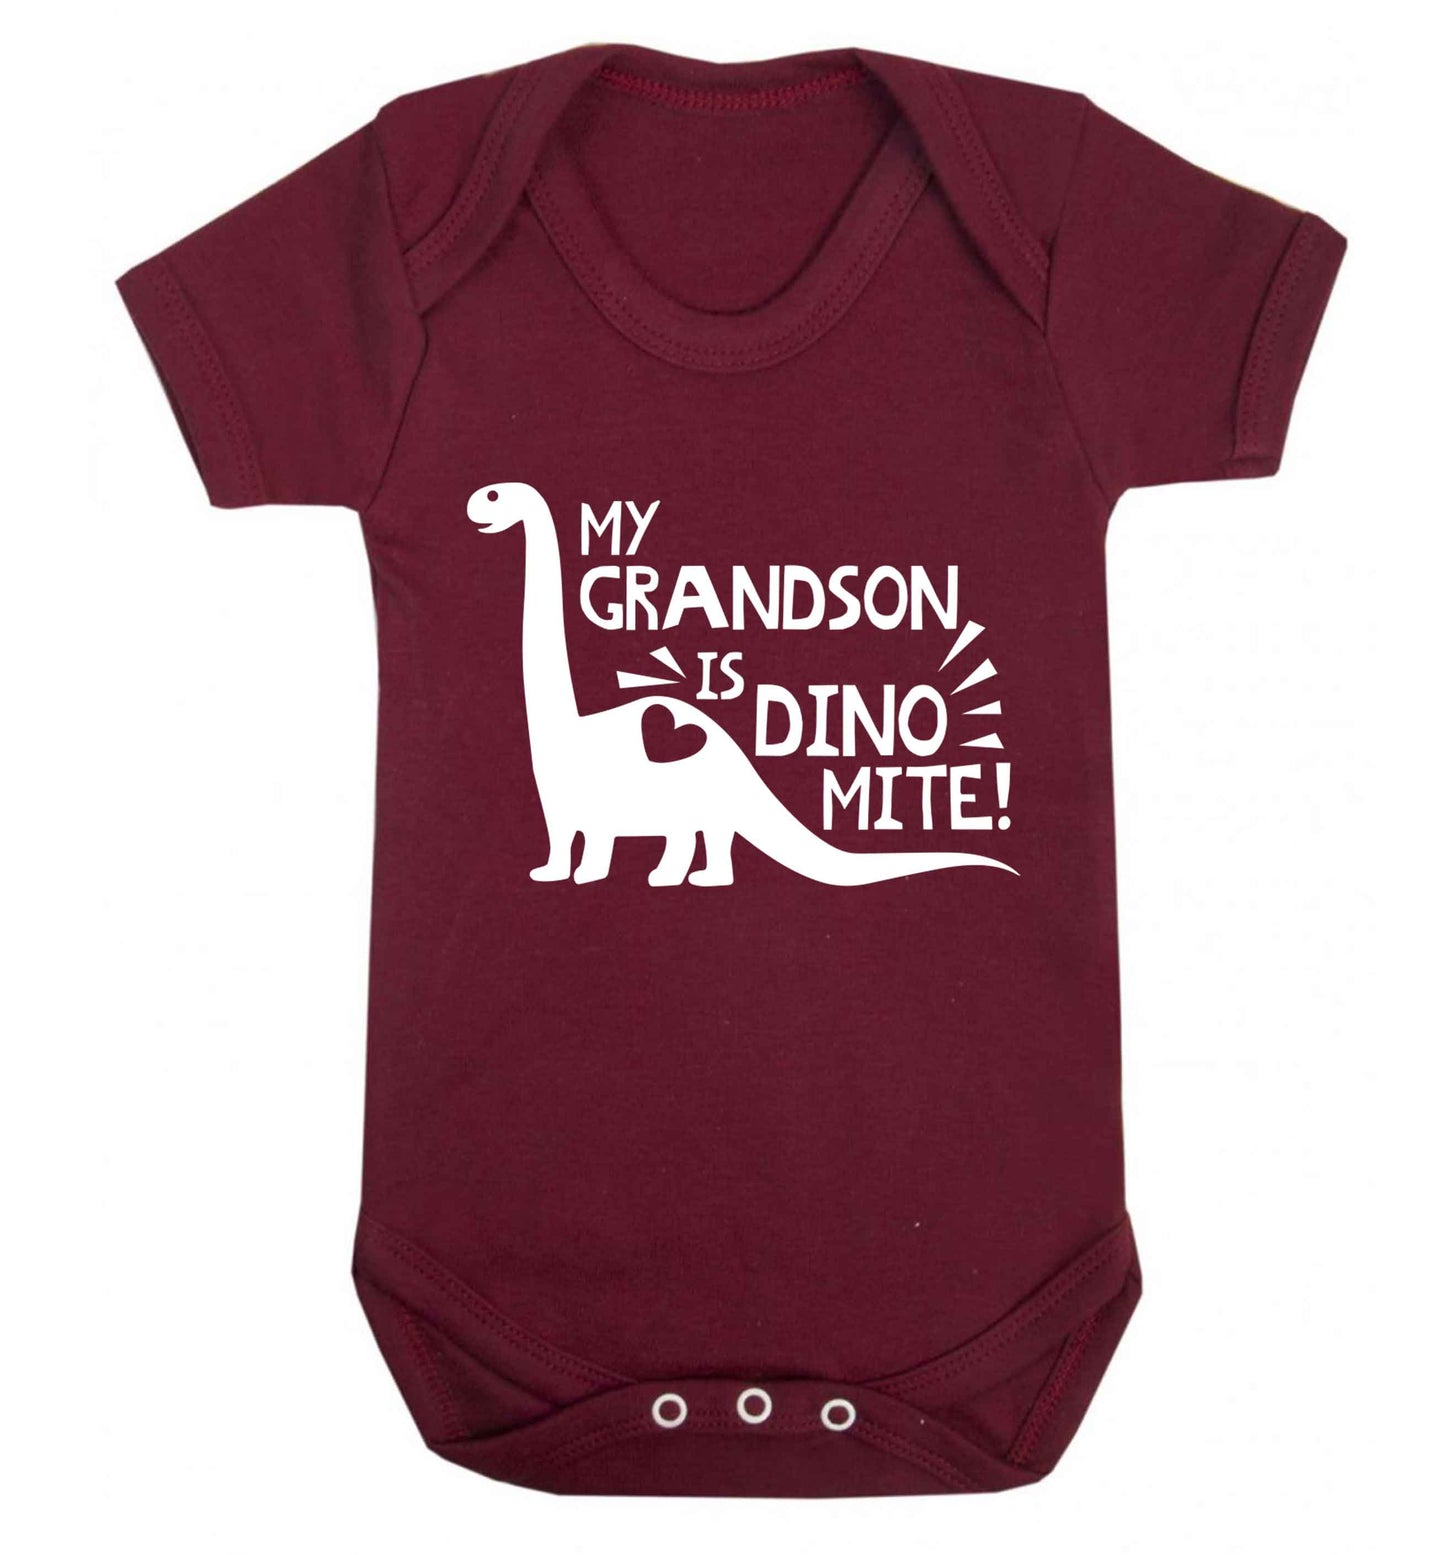 My grandson is dinomite! Baby Vest maroon 18-24 months